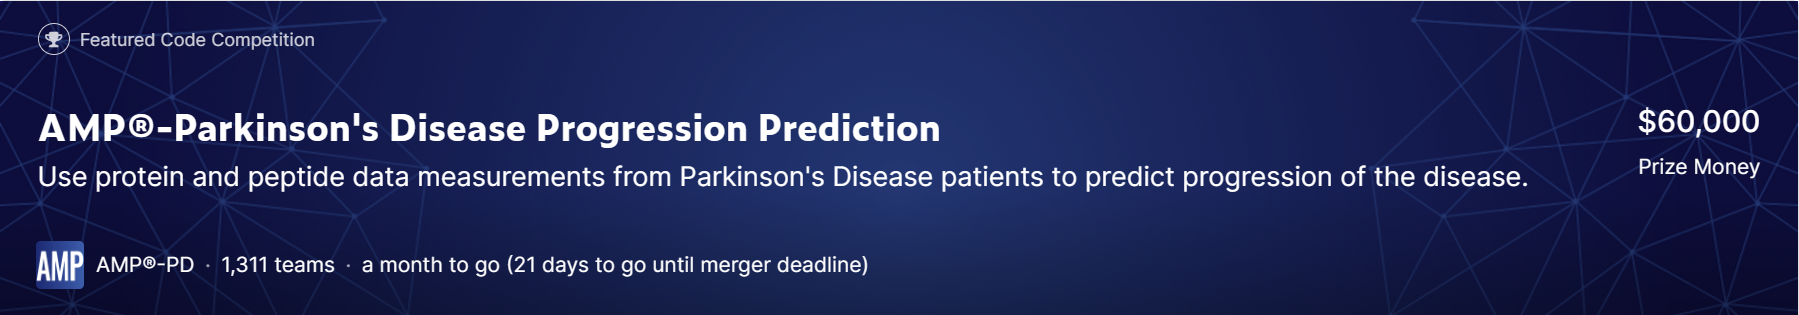 [比赛简介]AMP®-Parkinson‘s Disease Progression Prediction